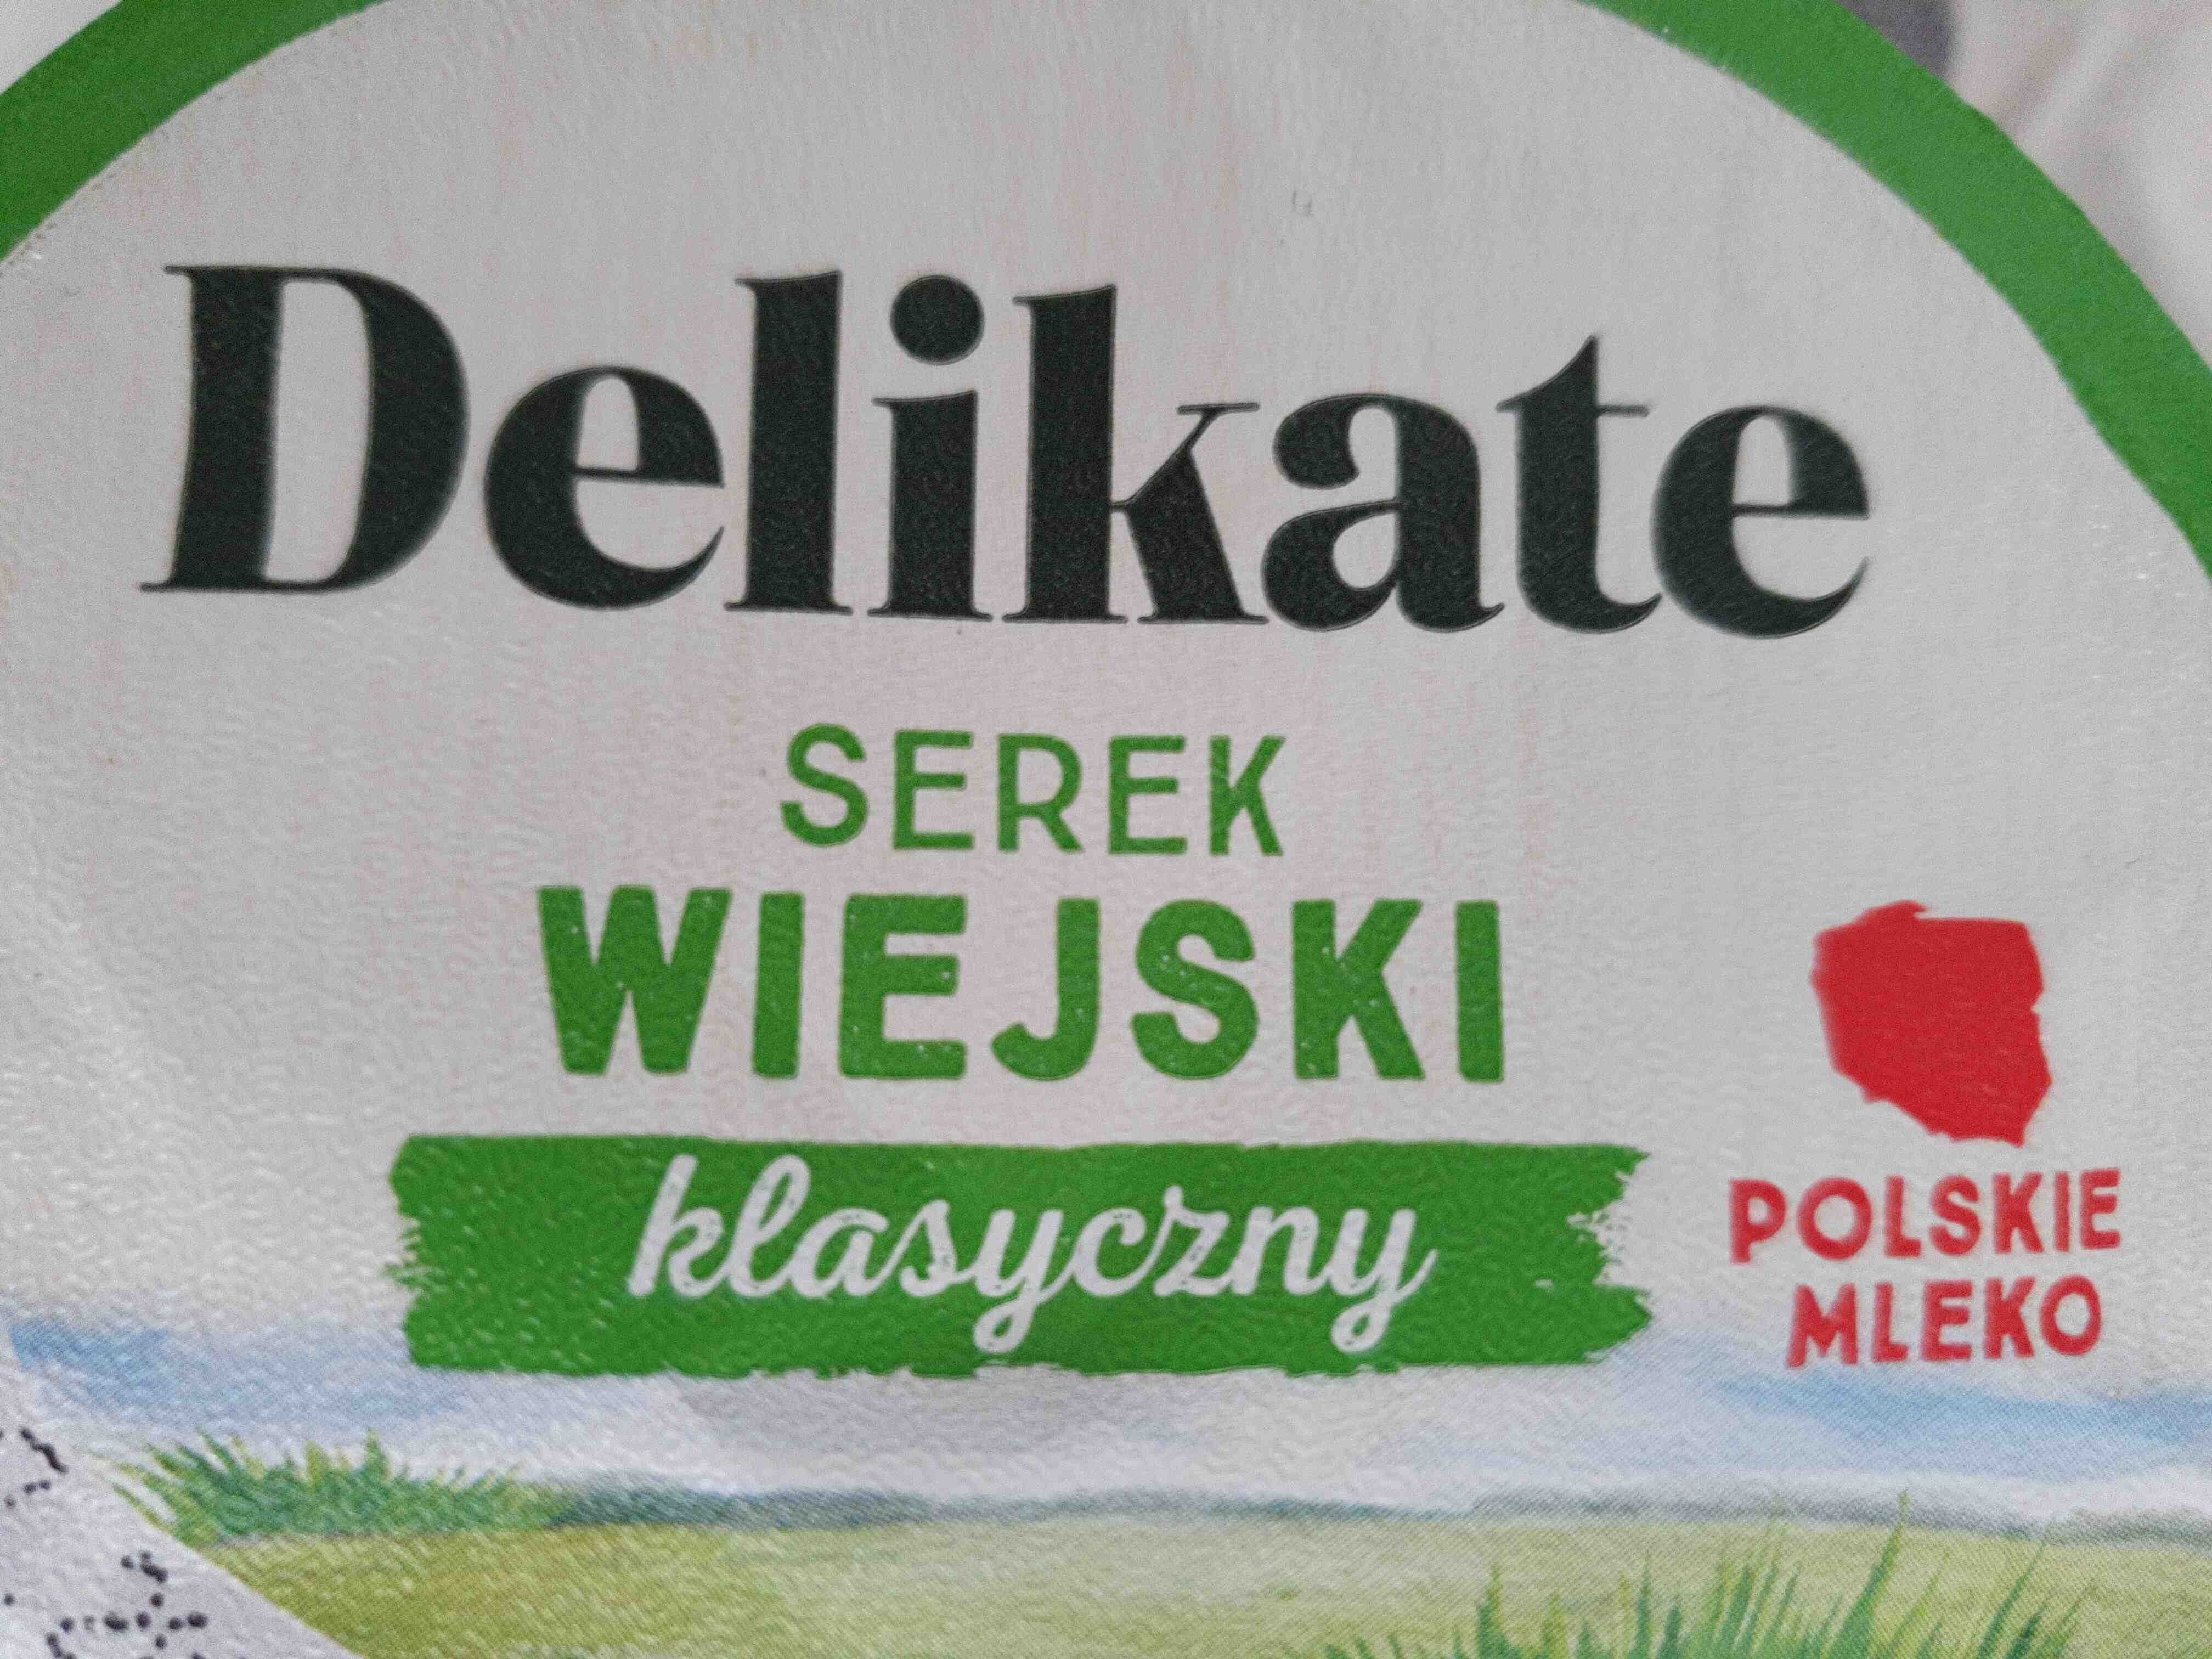 Serek wiejski - Produkt - en